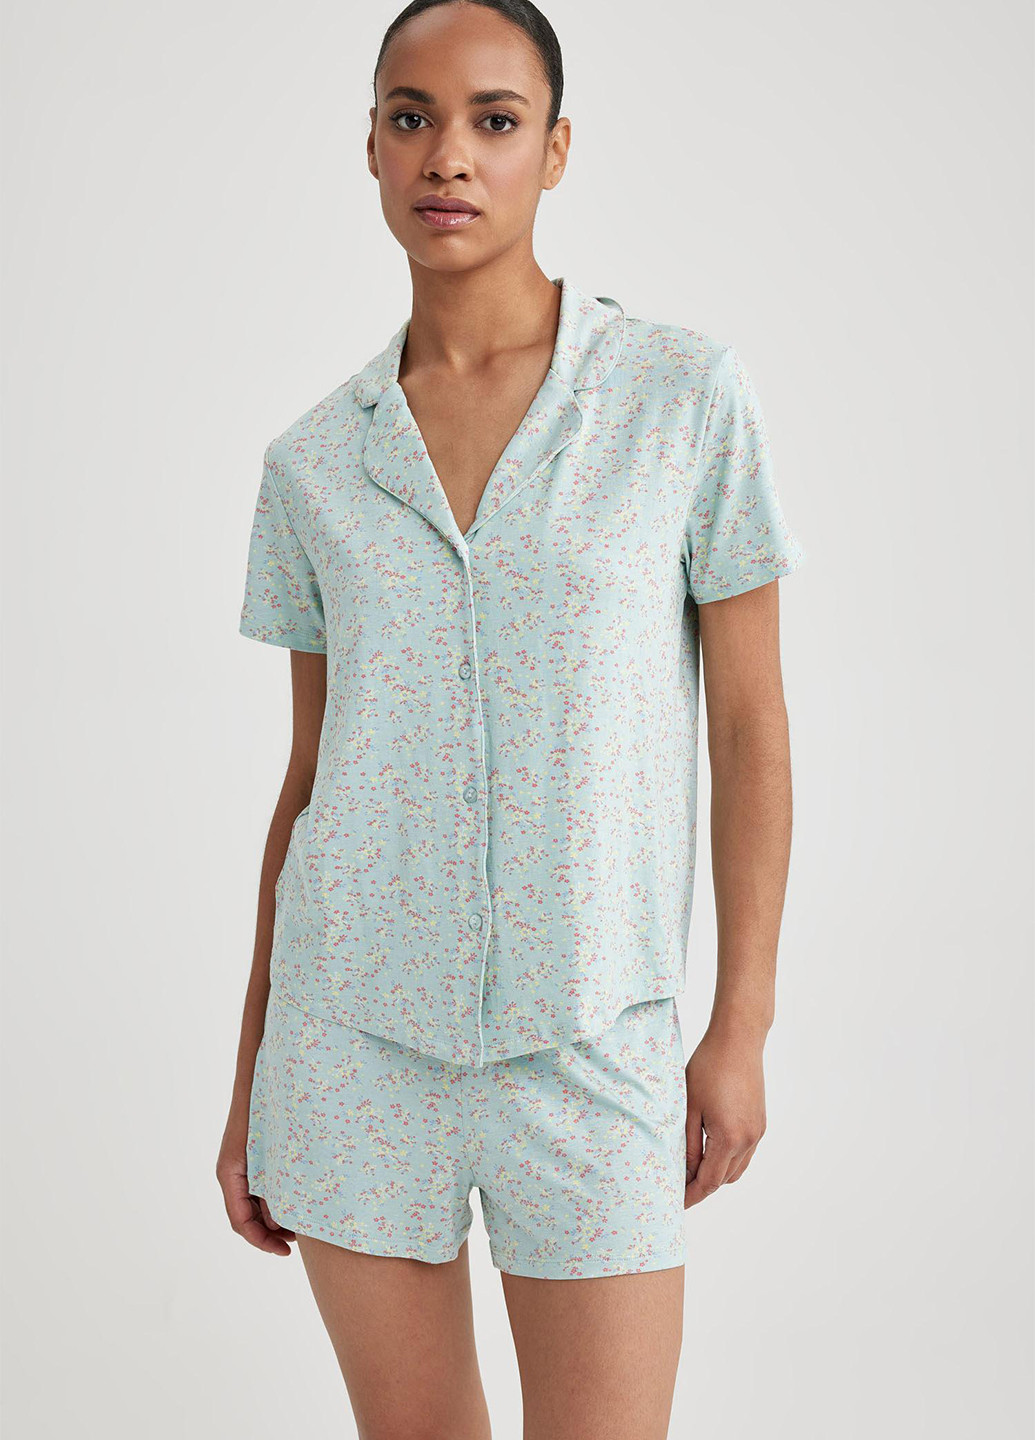 Мятная всесезон пижама (рубашка, шорты) рубашка + шорты DeFacto